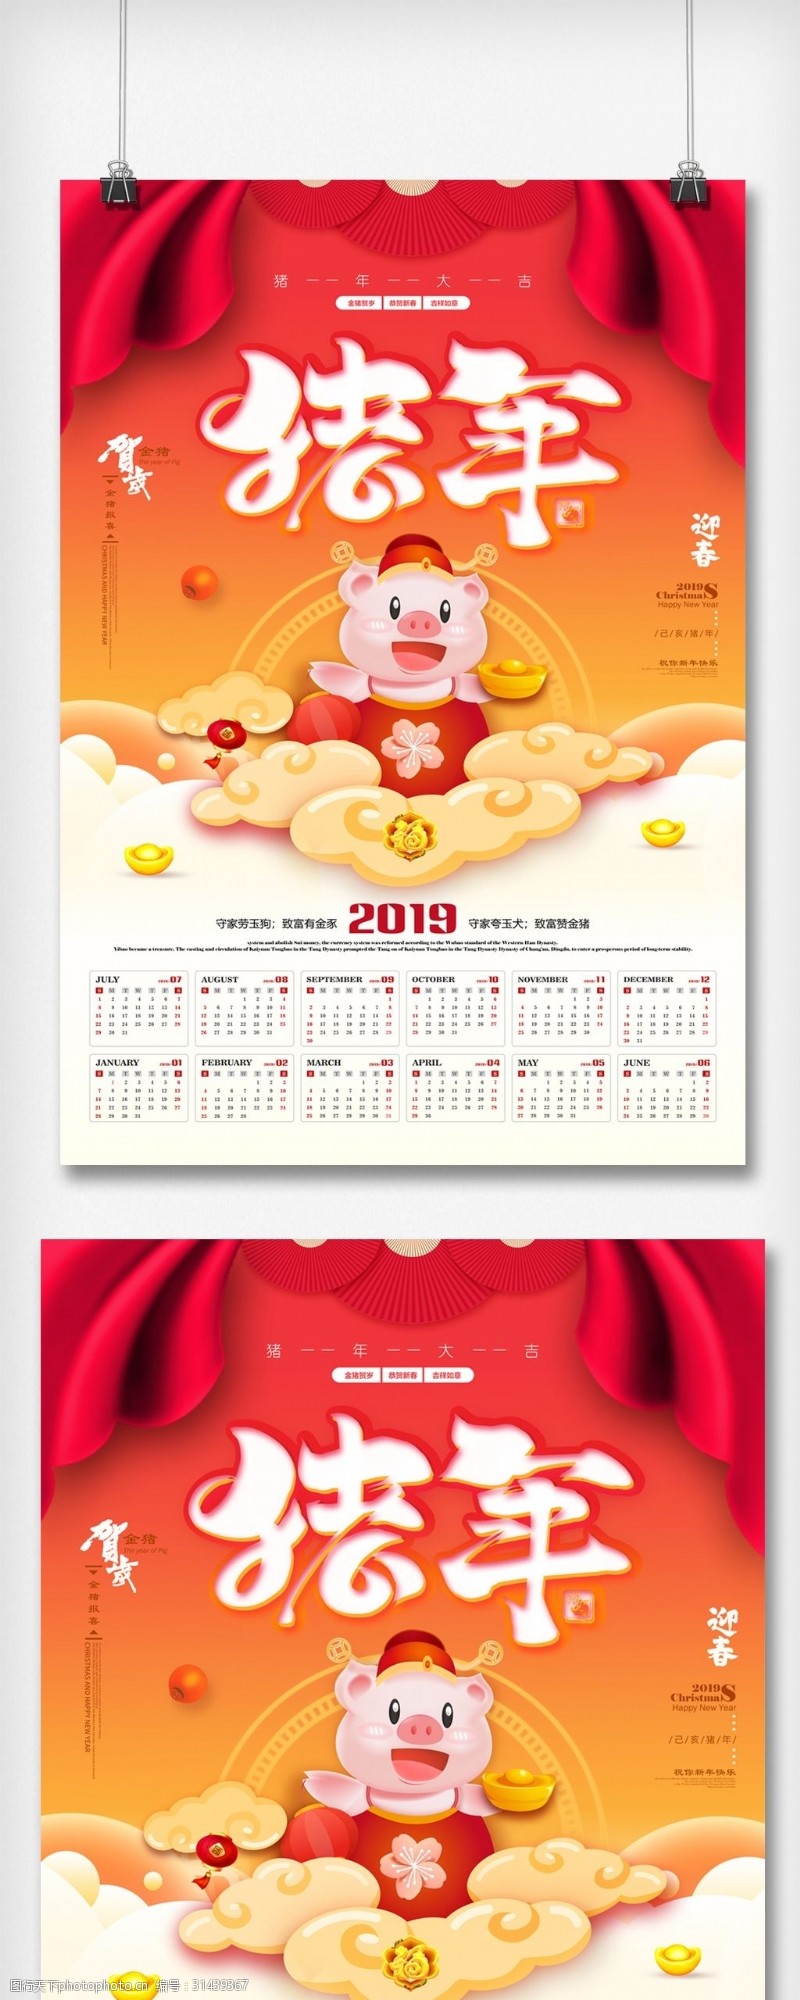 2014年日历2019年猪年挂历模版设计